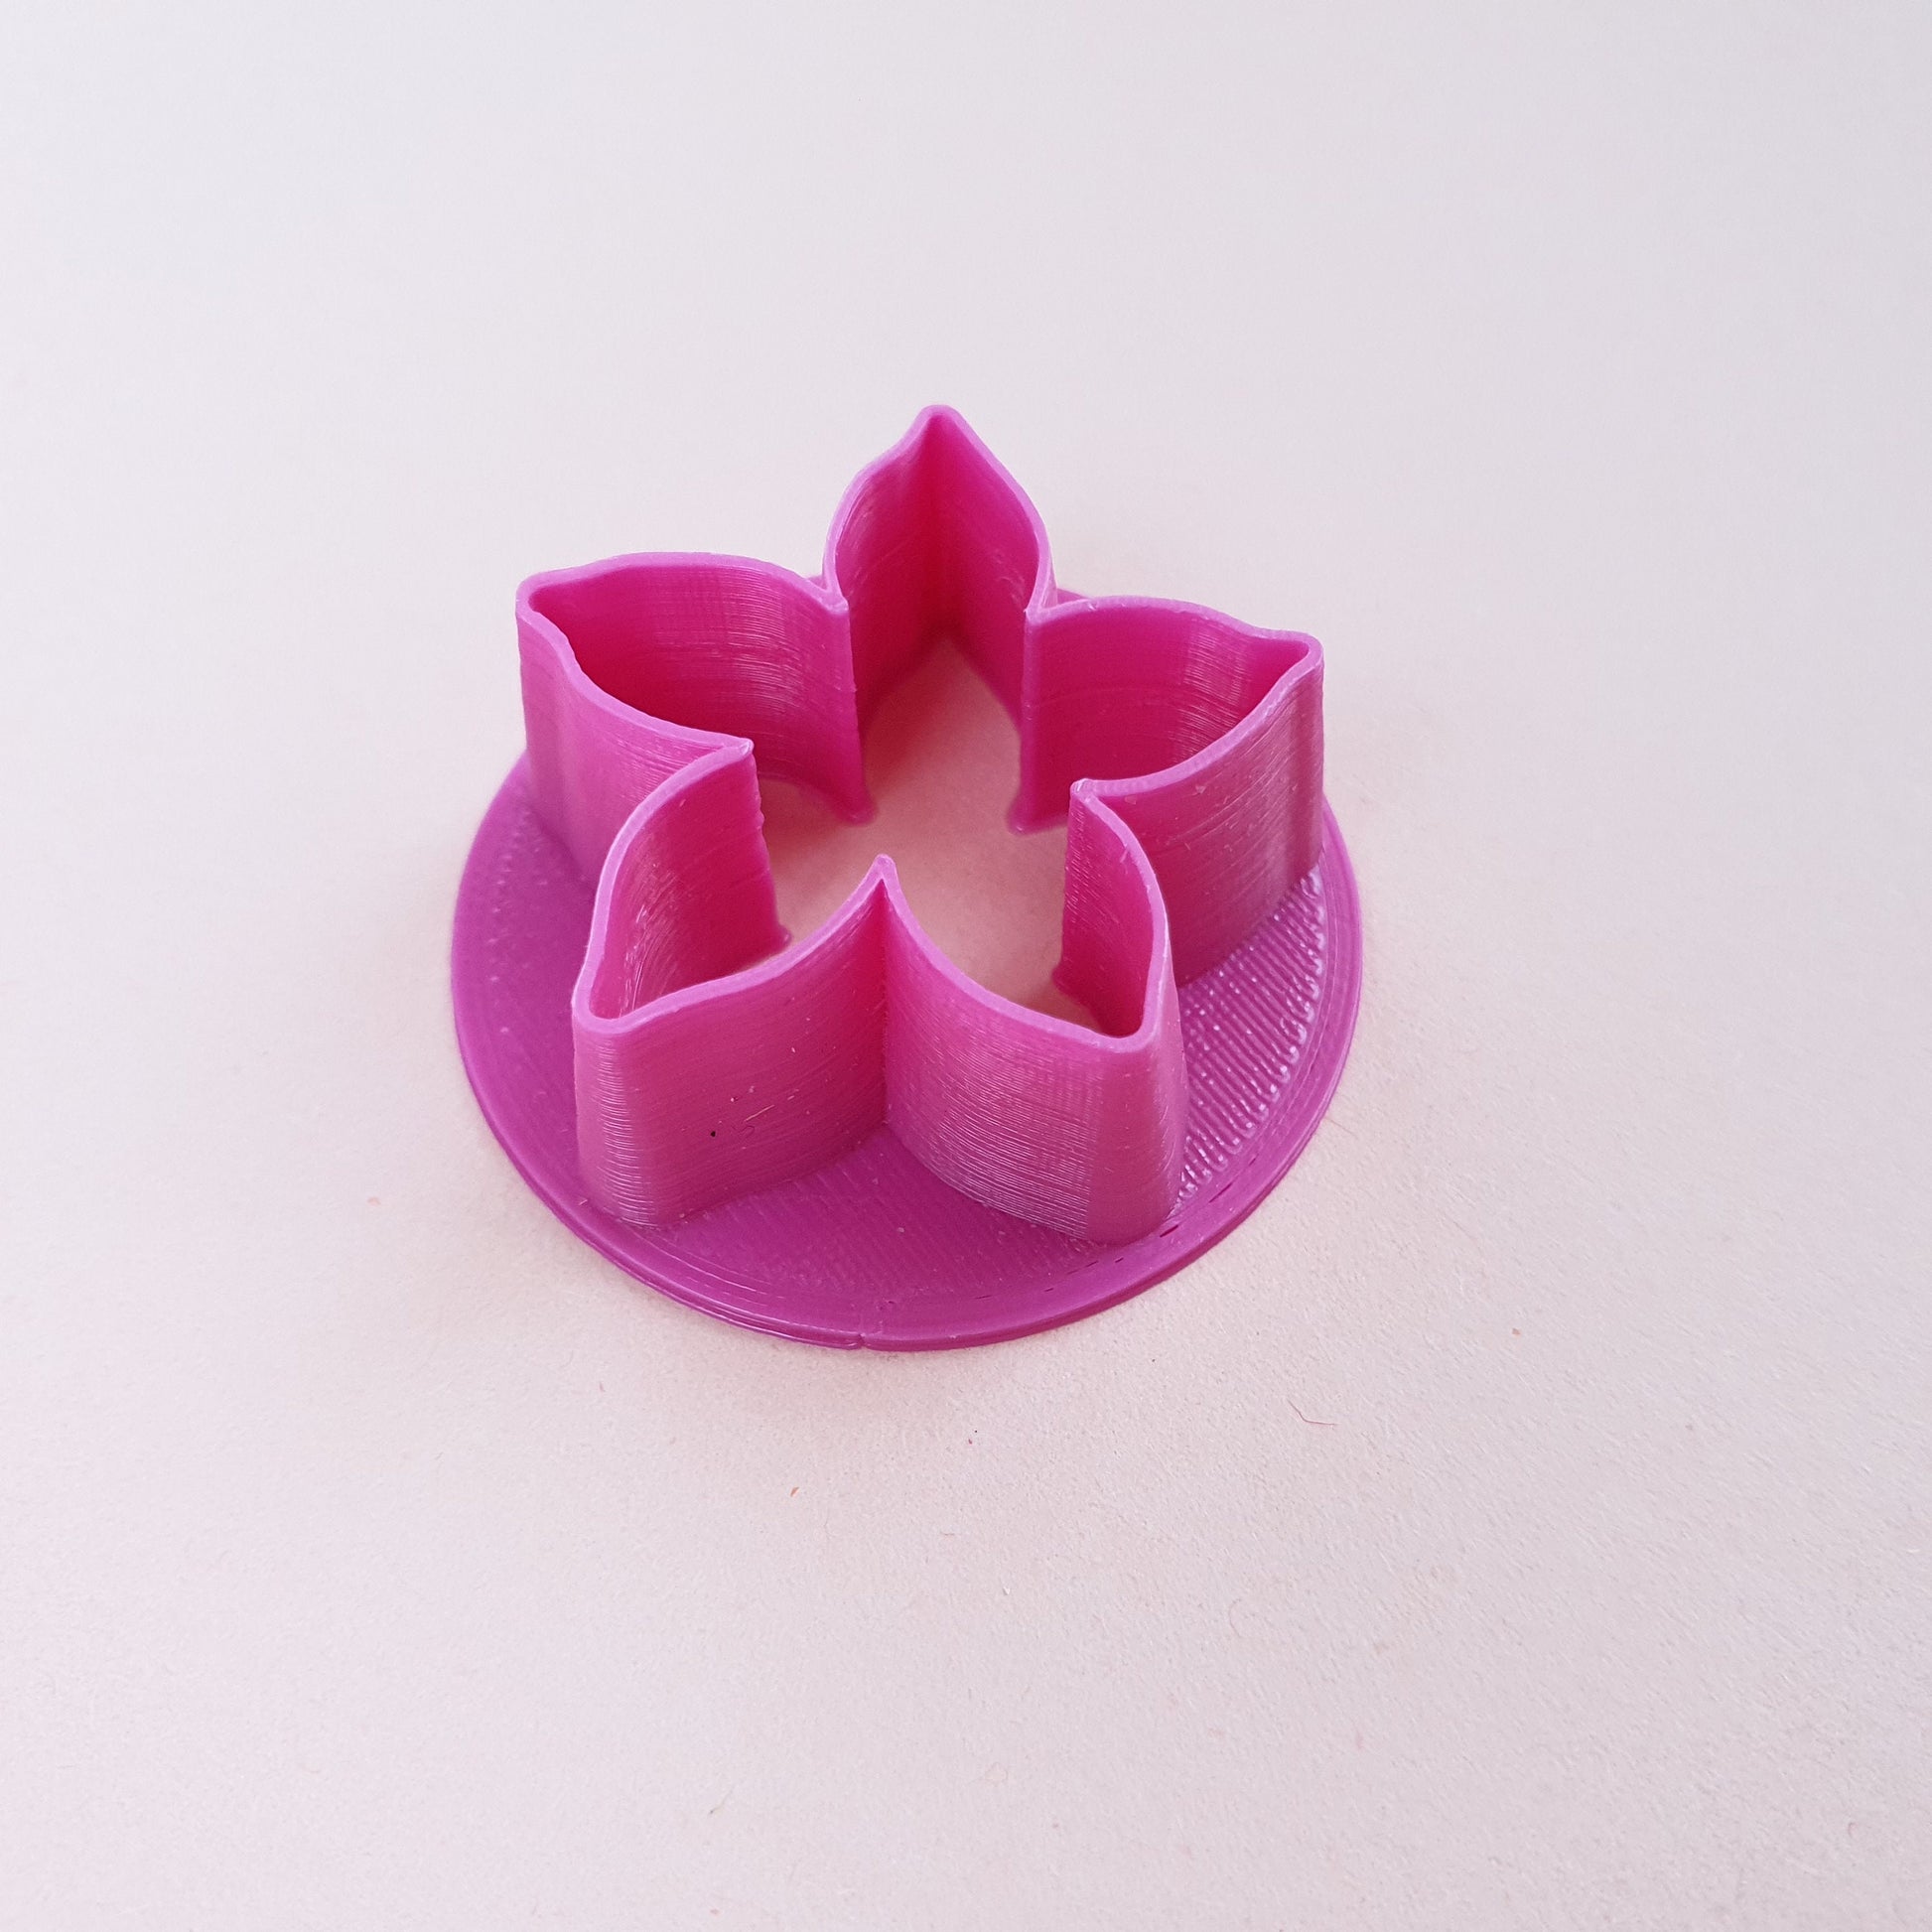 Polymer clay cutter 3D print cutters Jewelry Earrings "Flower" shape plastic cutter - Luxy Kraft